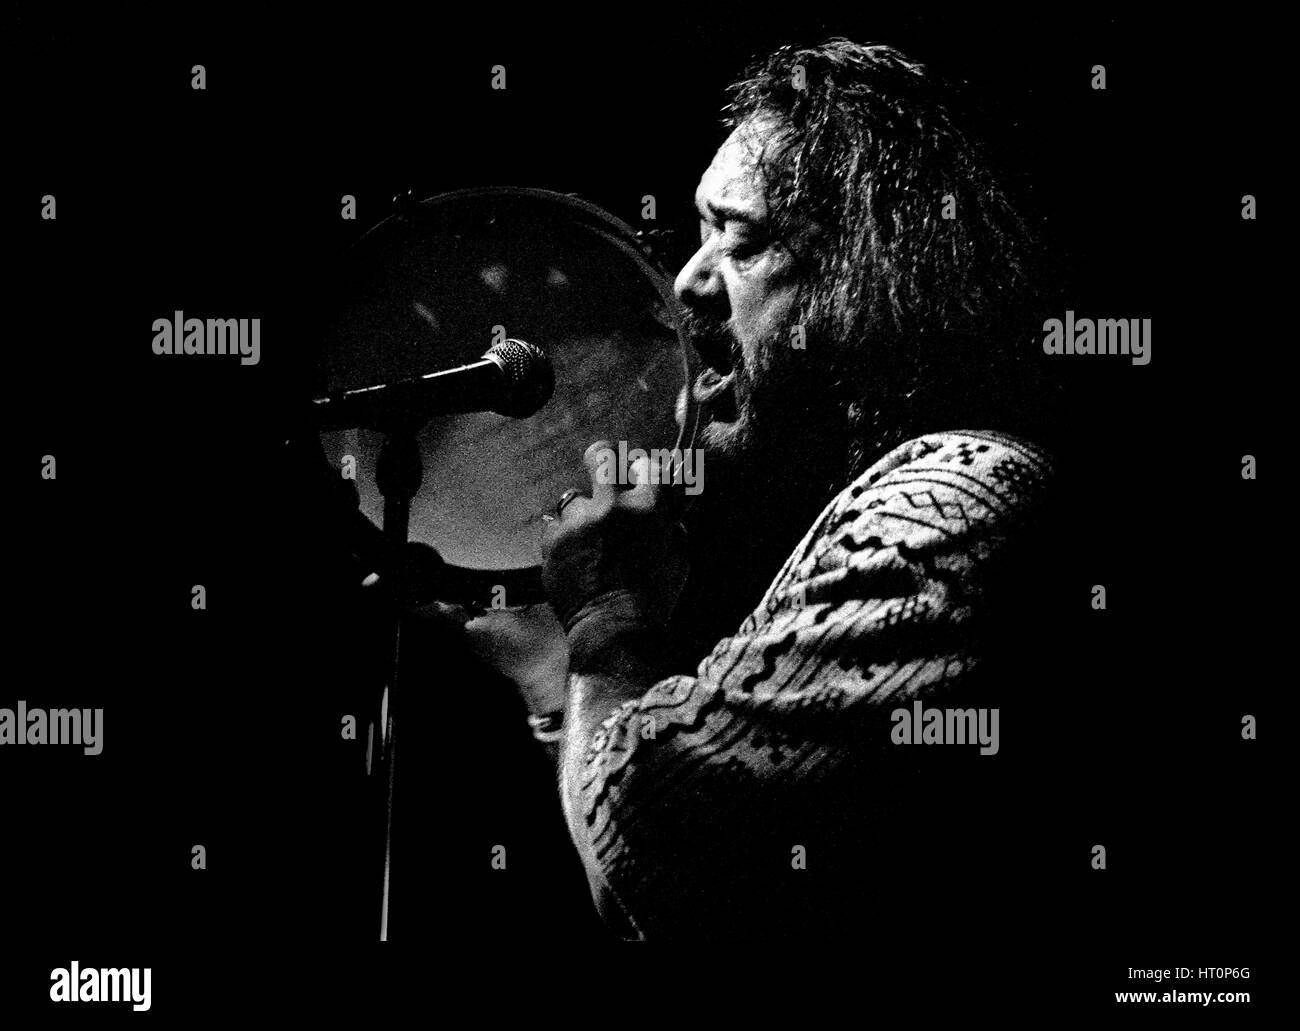 Airto Moreira, batteur et percussionniste de jazz brésilien, Ronnie Scott's, Londres, 1995. Artiste : Brian O'Connor. Banque D'Images